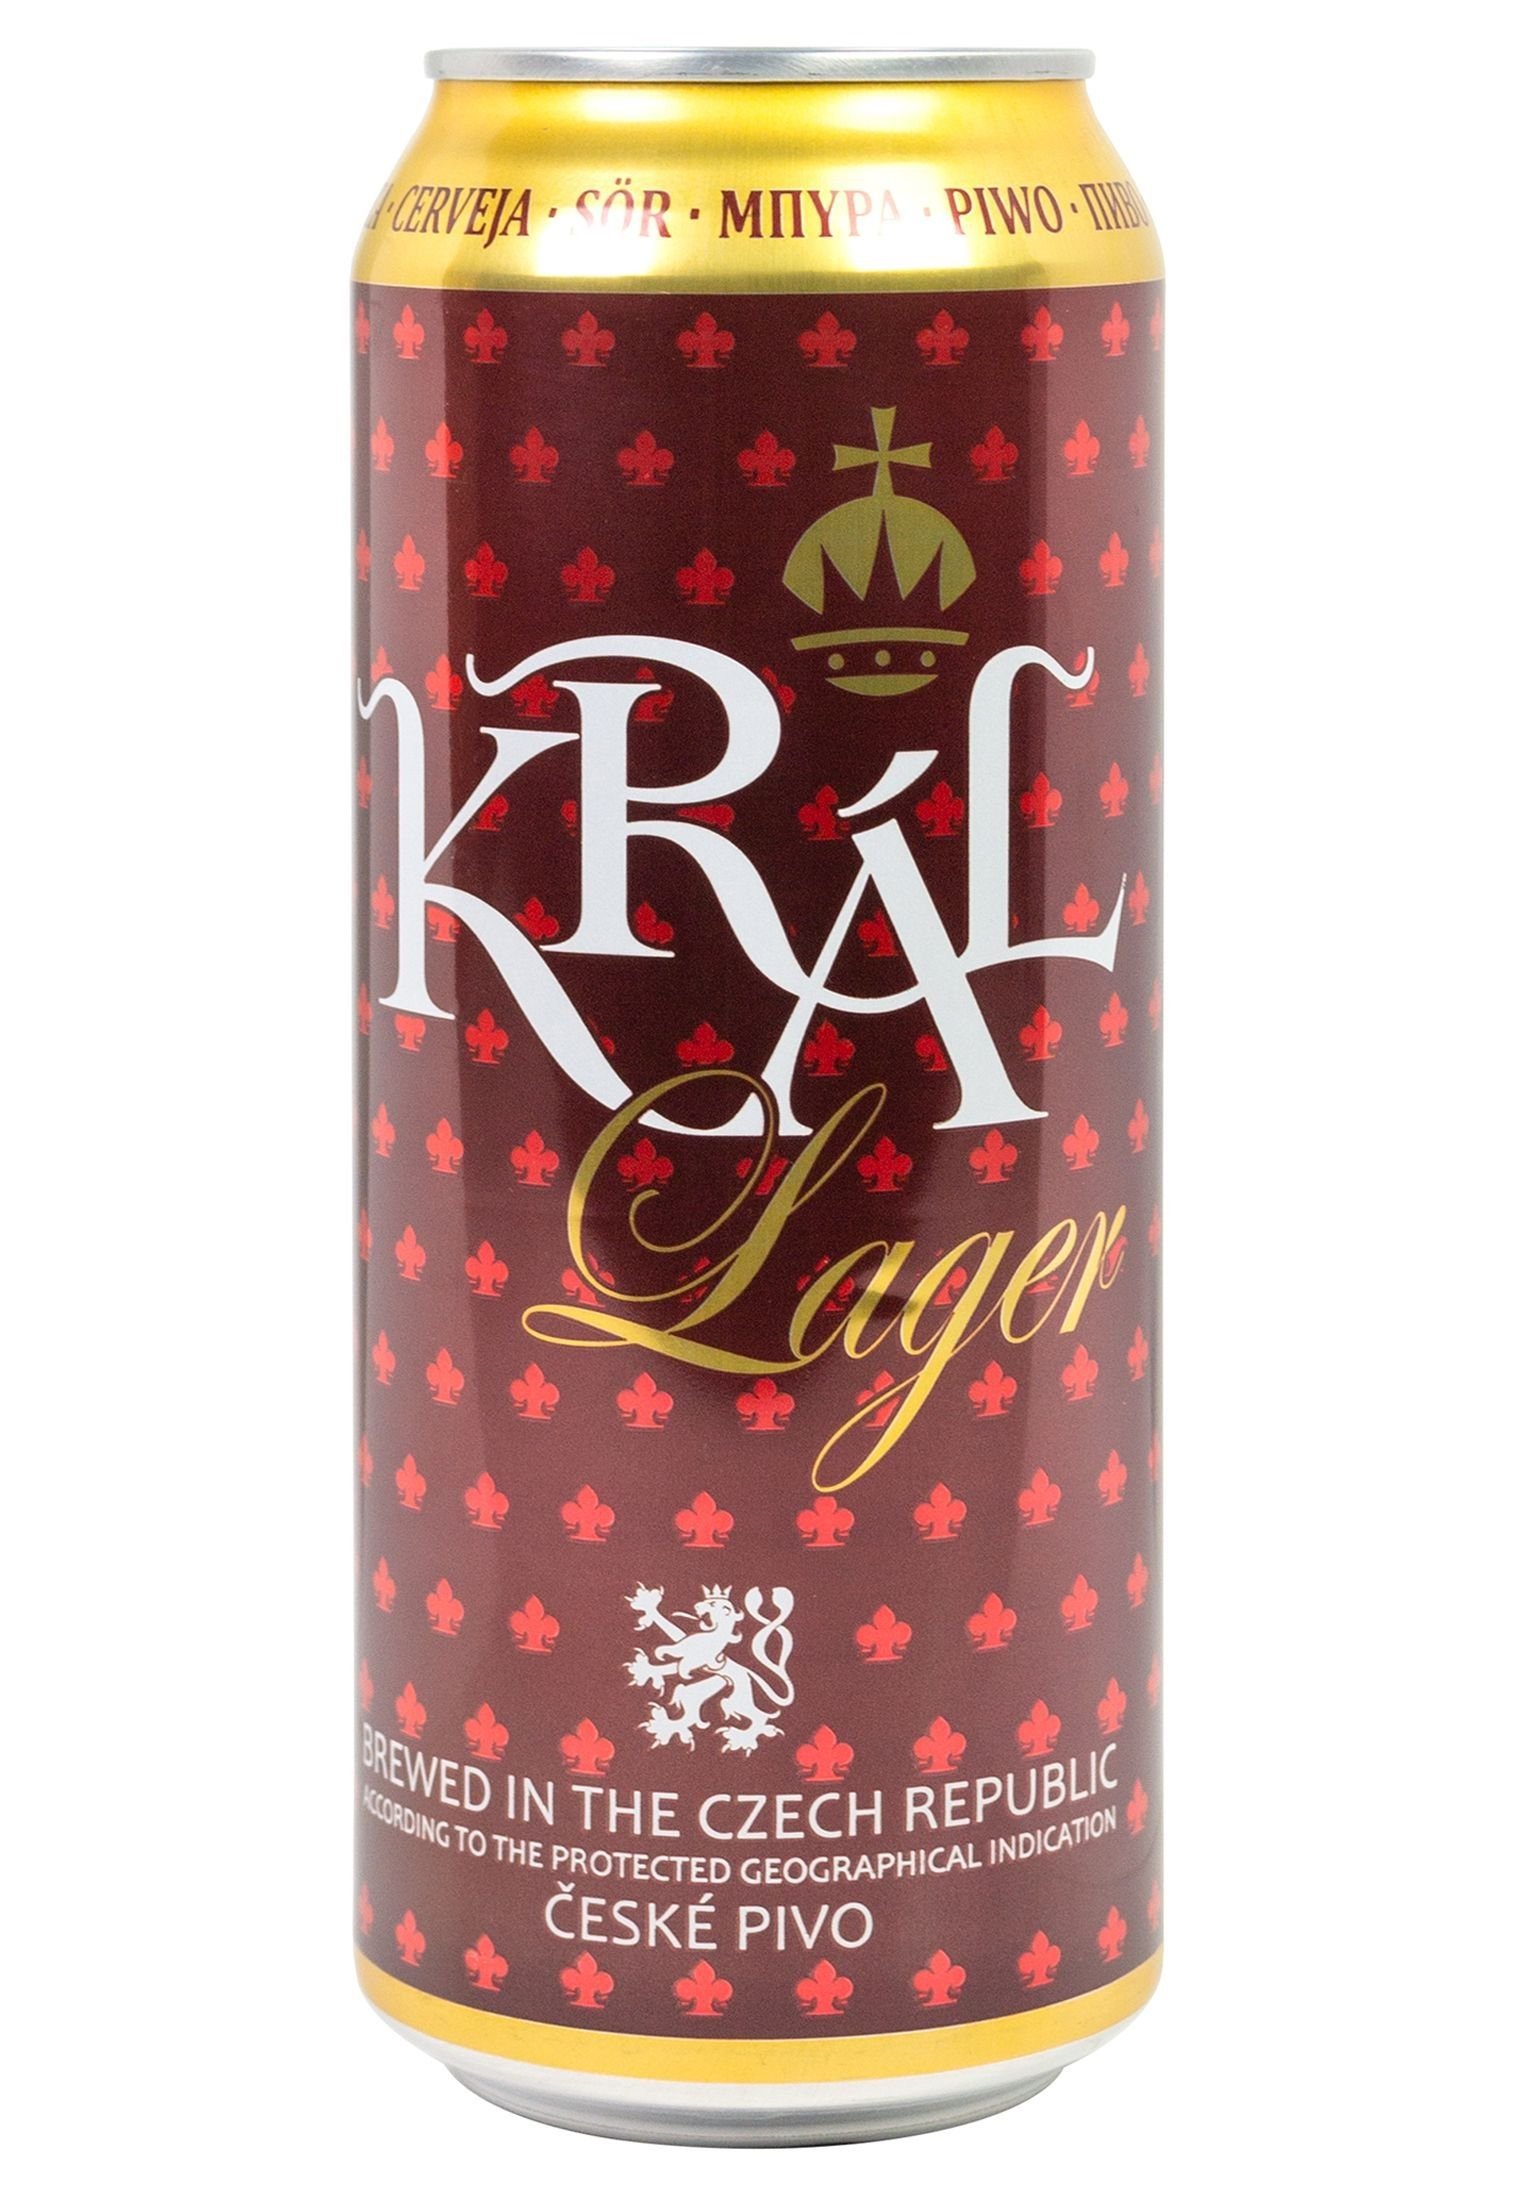 Пиво Kral Lager светлое, 4.6%, ж/б, 0.5 л - фото 1